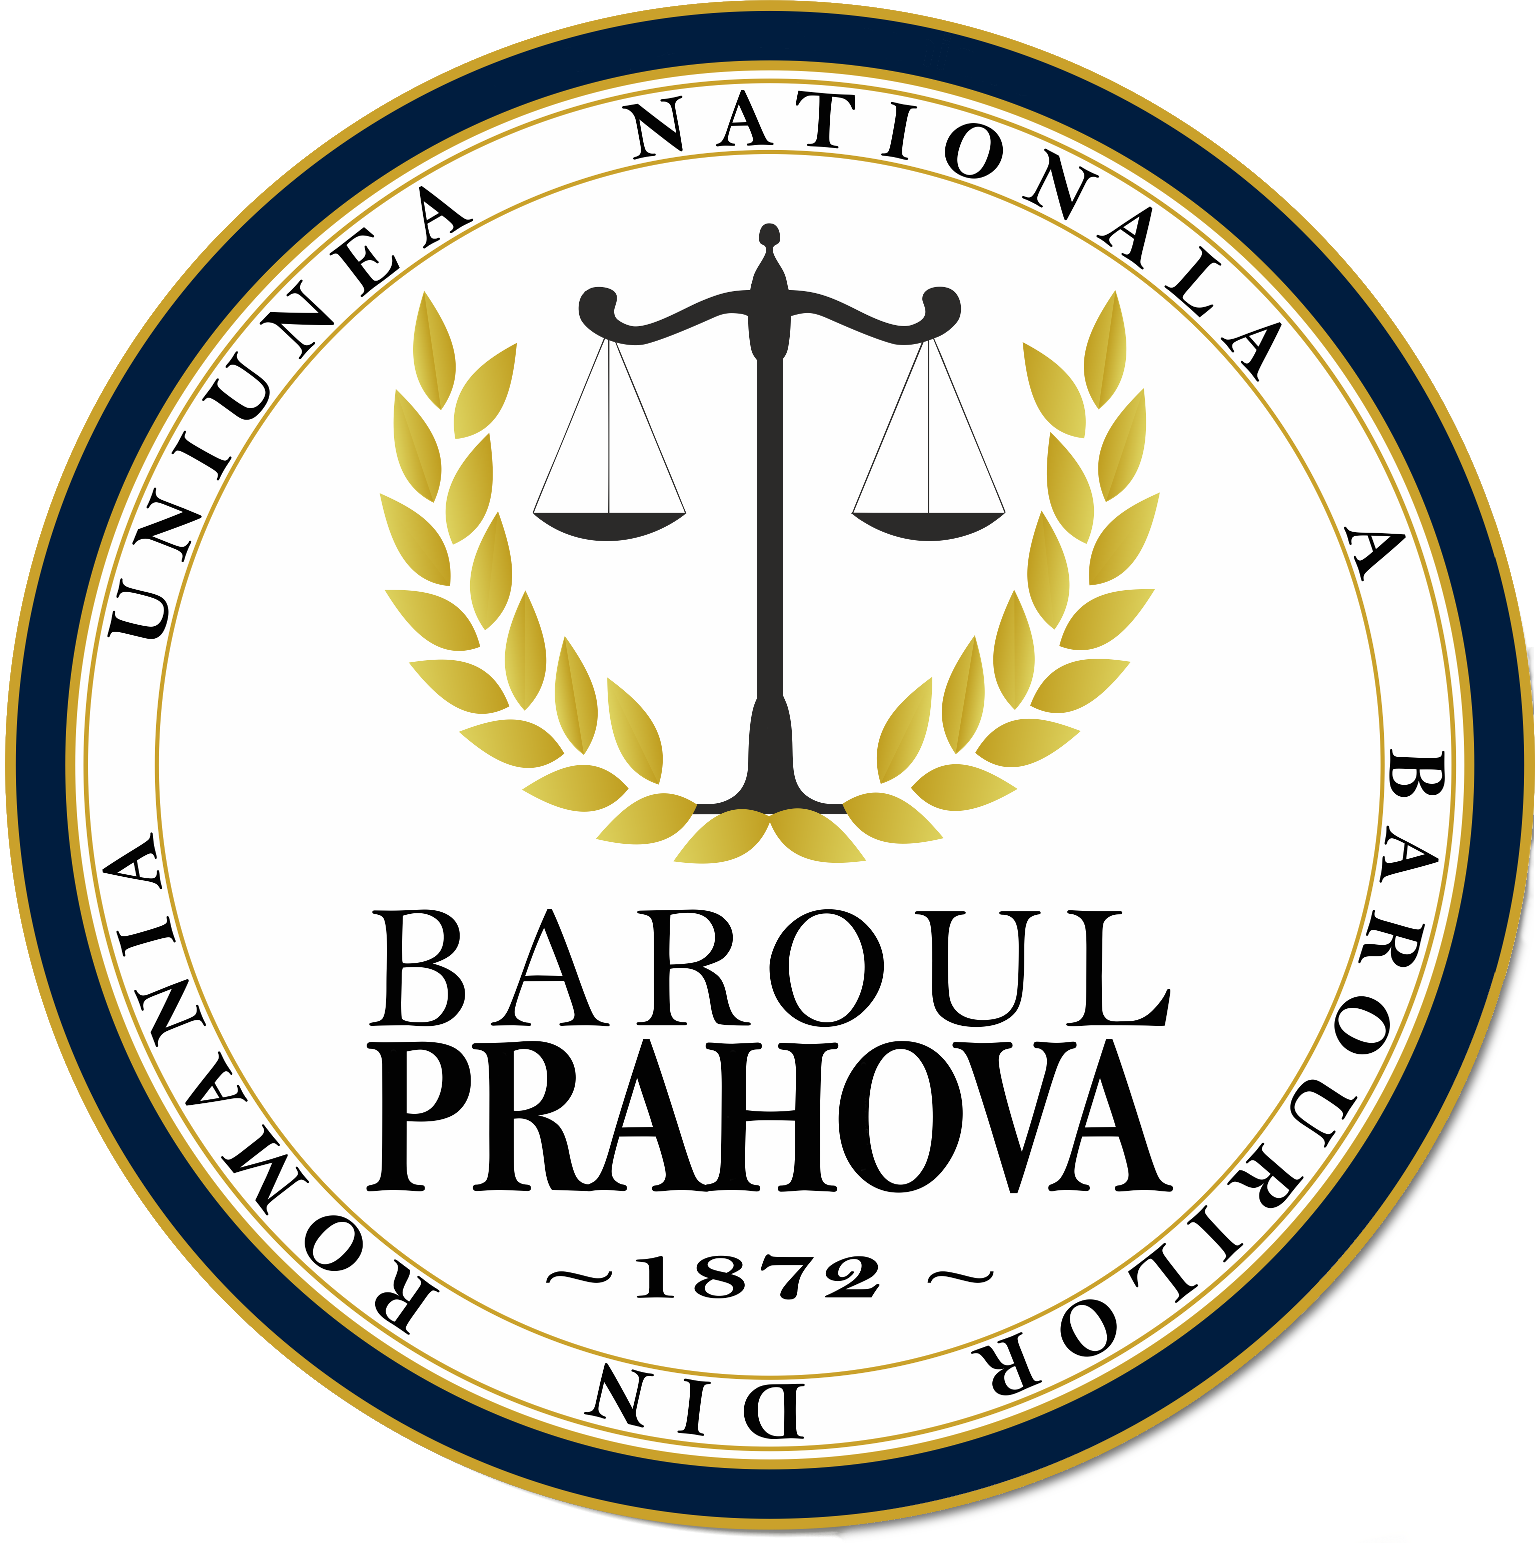 Baroul Prahova Sigla